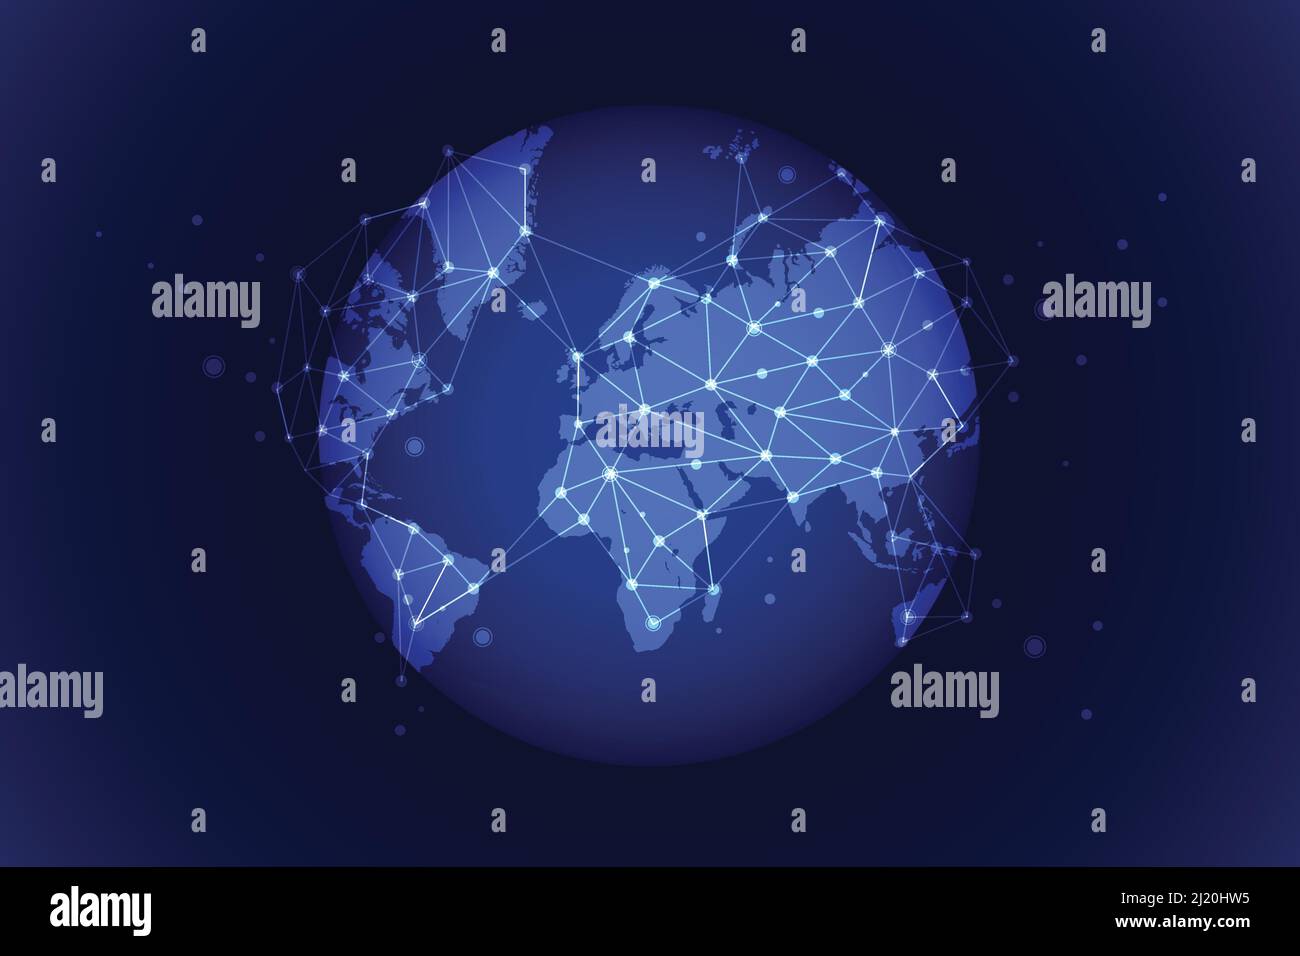 Globales Netzwerk um den Planeten Erde aus dem All. Globales soziales Netzwerk. Leuchtende Linien Symbole für Internet, Radio, Fernsehen, Handy und Satellit c Stock Vektor